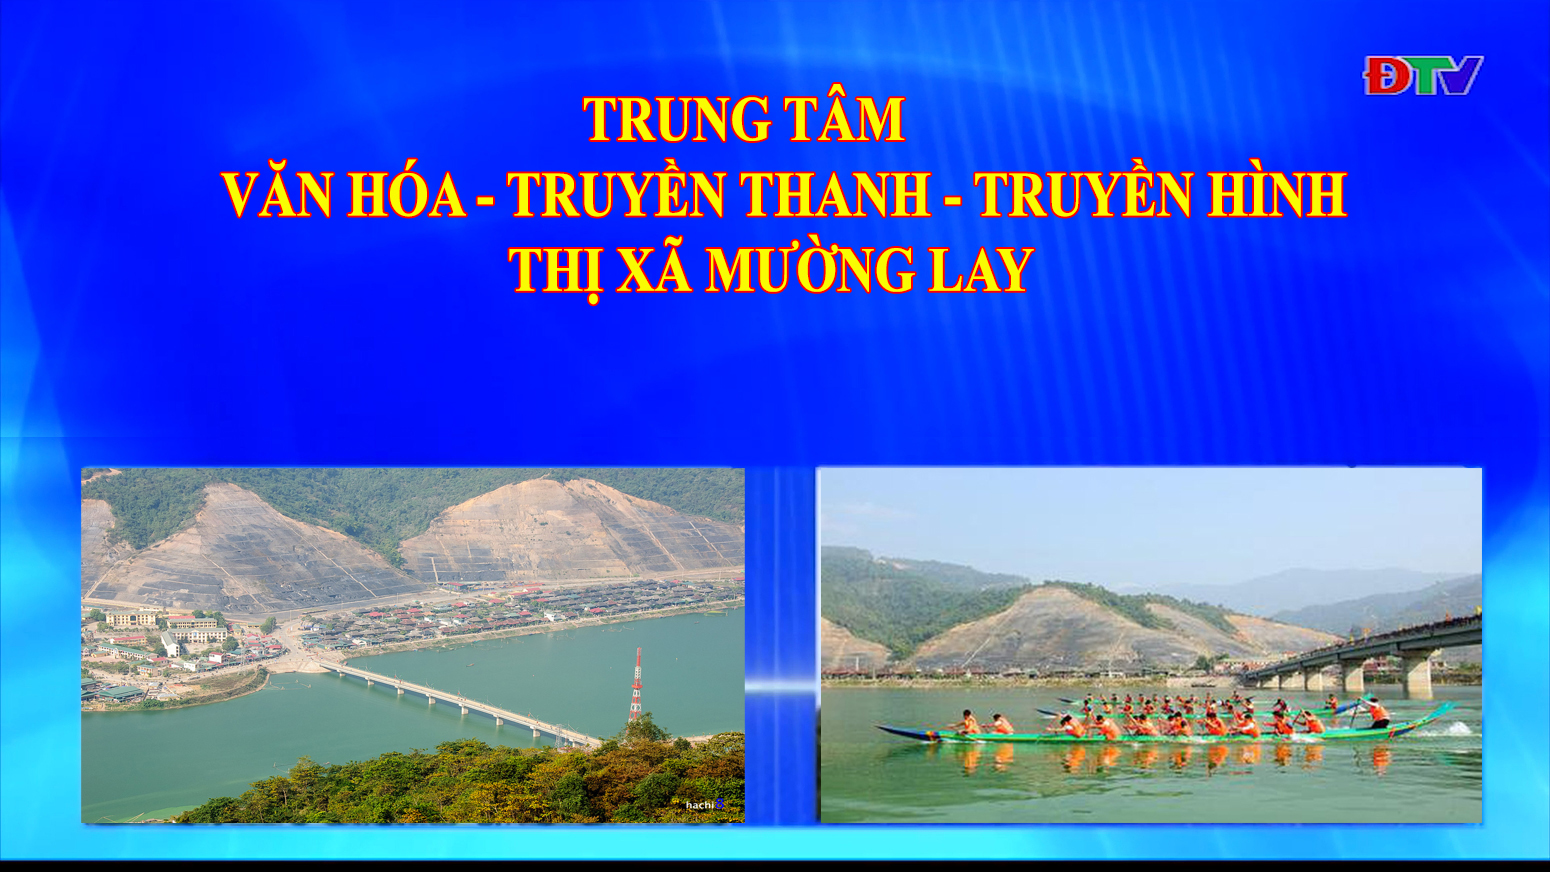 Trung tâm VH-TTTH thị xã Mường Lay (Ngày 24-9-2021)